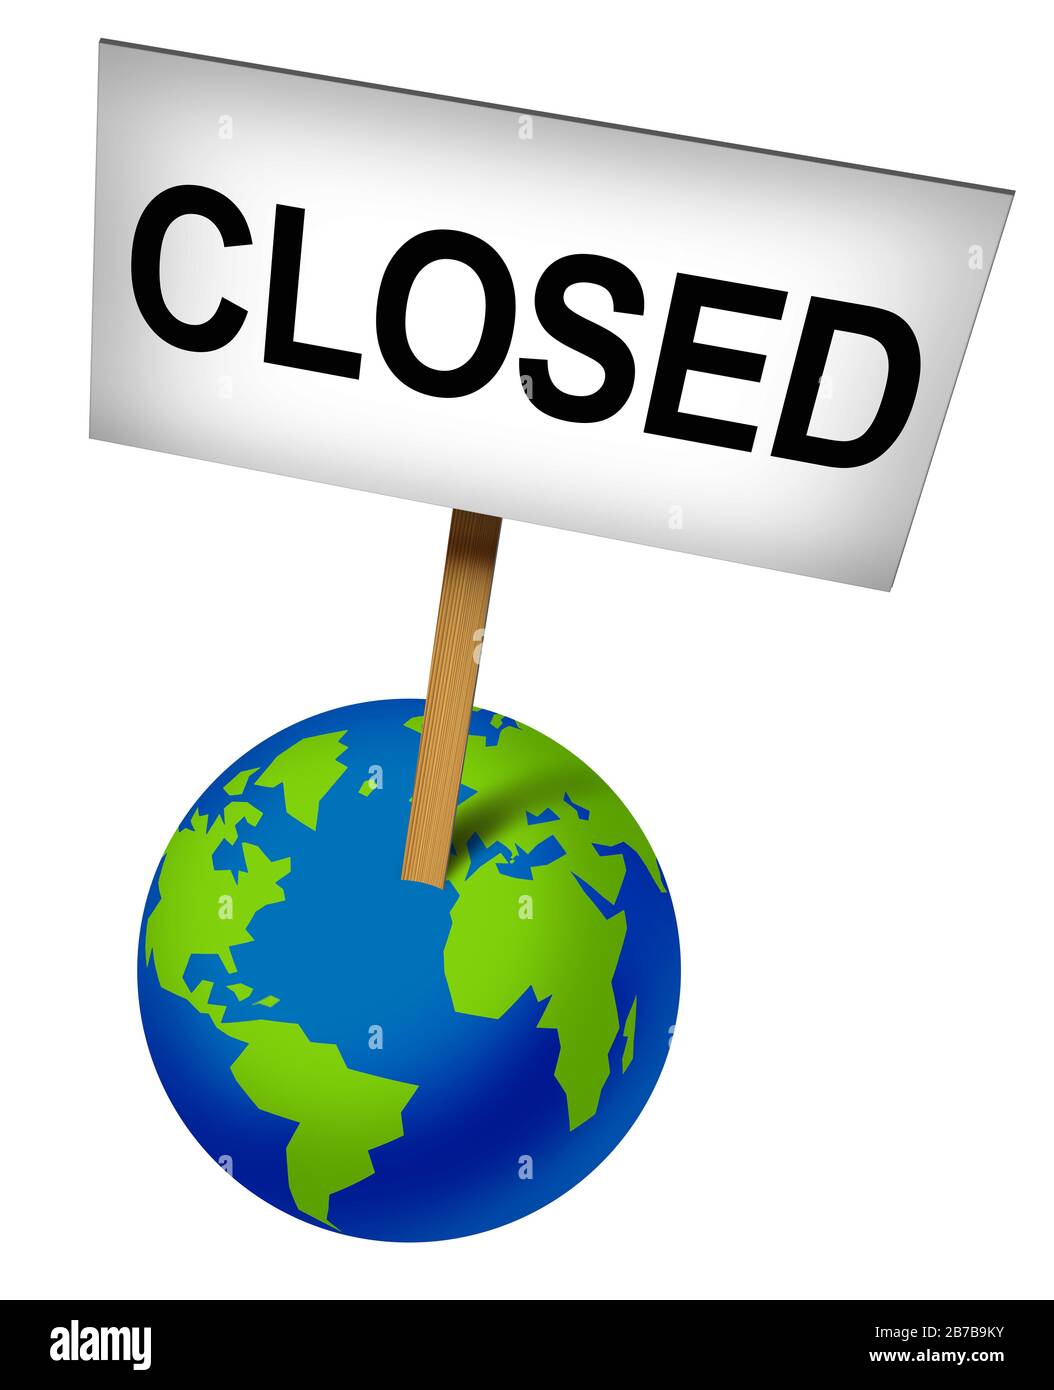 A annulé les événements mondiaux et les fermetures internationales en raison du coronavirus et des affaires mondiales fermées pour les affaires en raison de la peur du virus ou de la crise économique. Banque D'Images